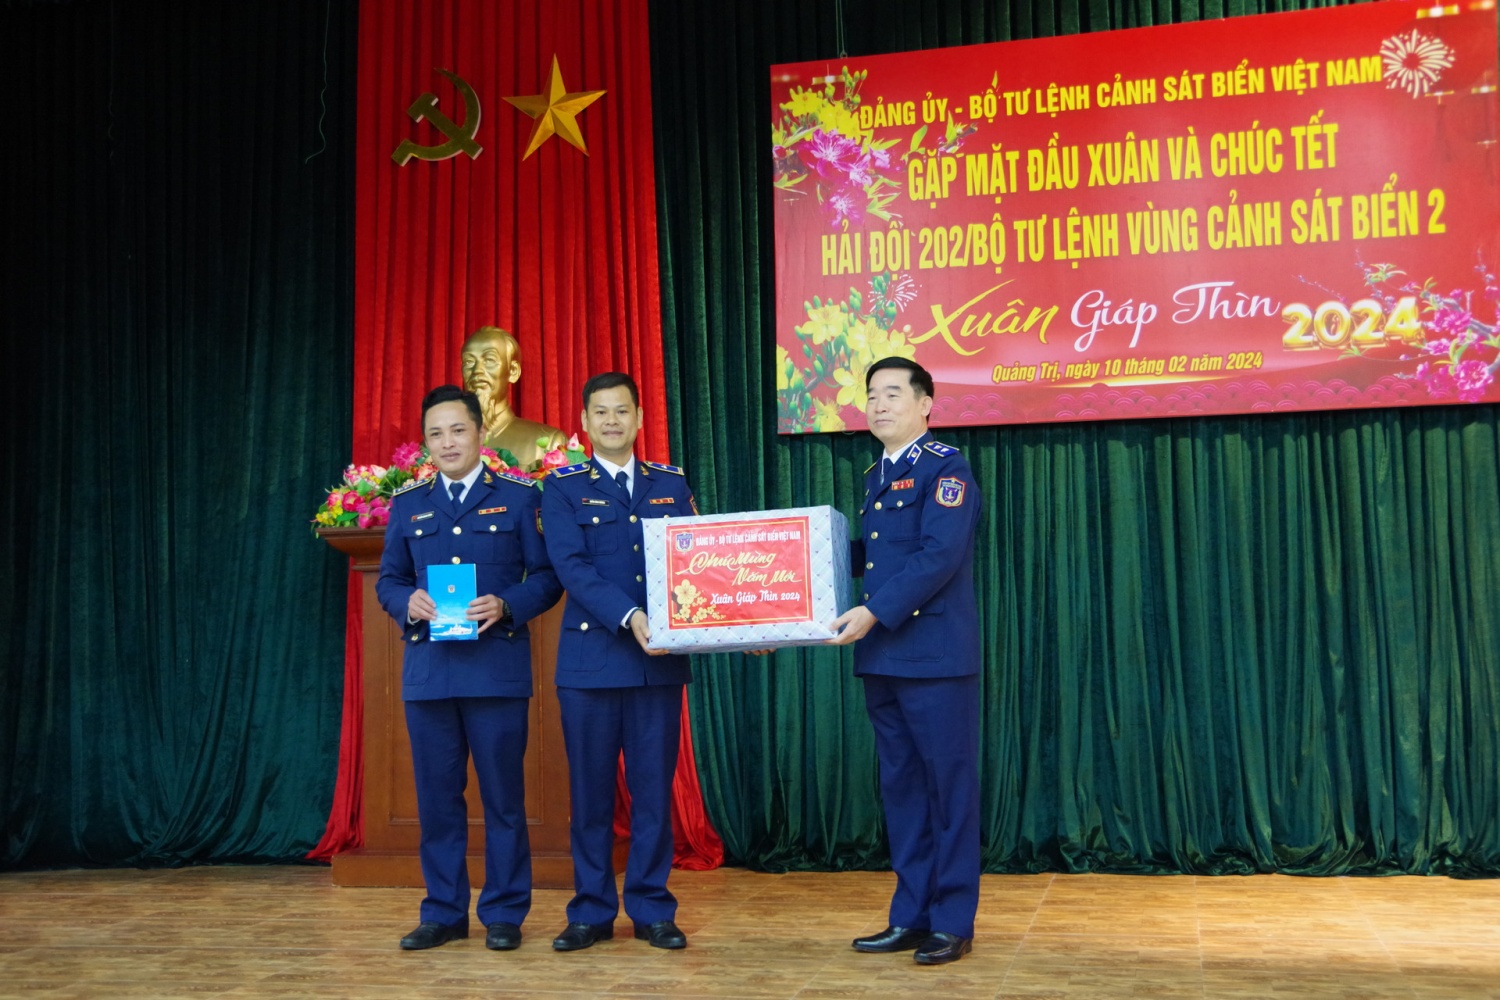 Chính ủy Cảnh sát biển Việt Nam thăm và chúc tết Hải đội 202 Cảnh sát biển